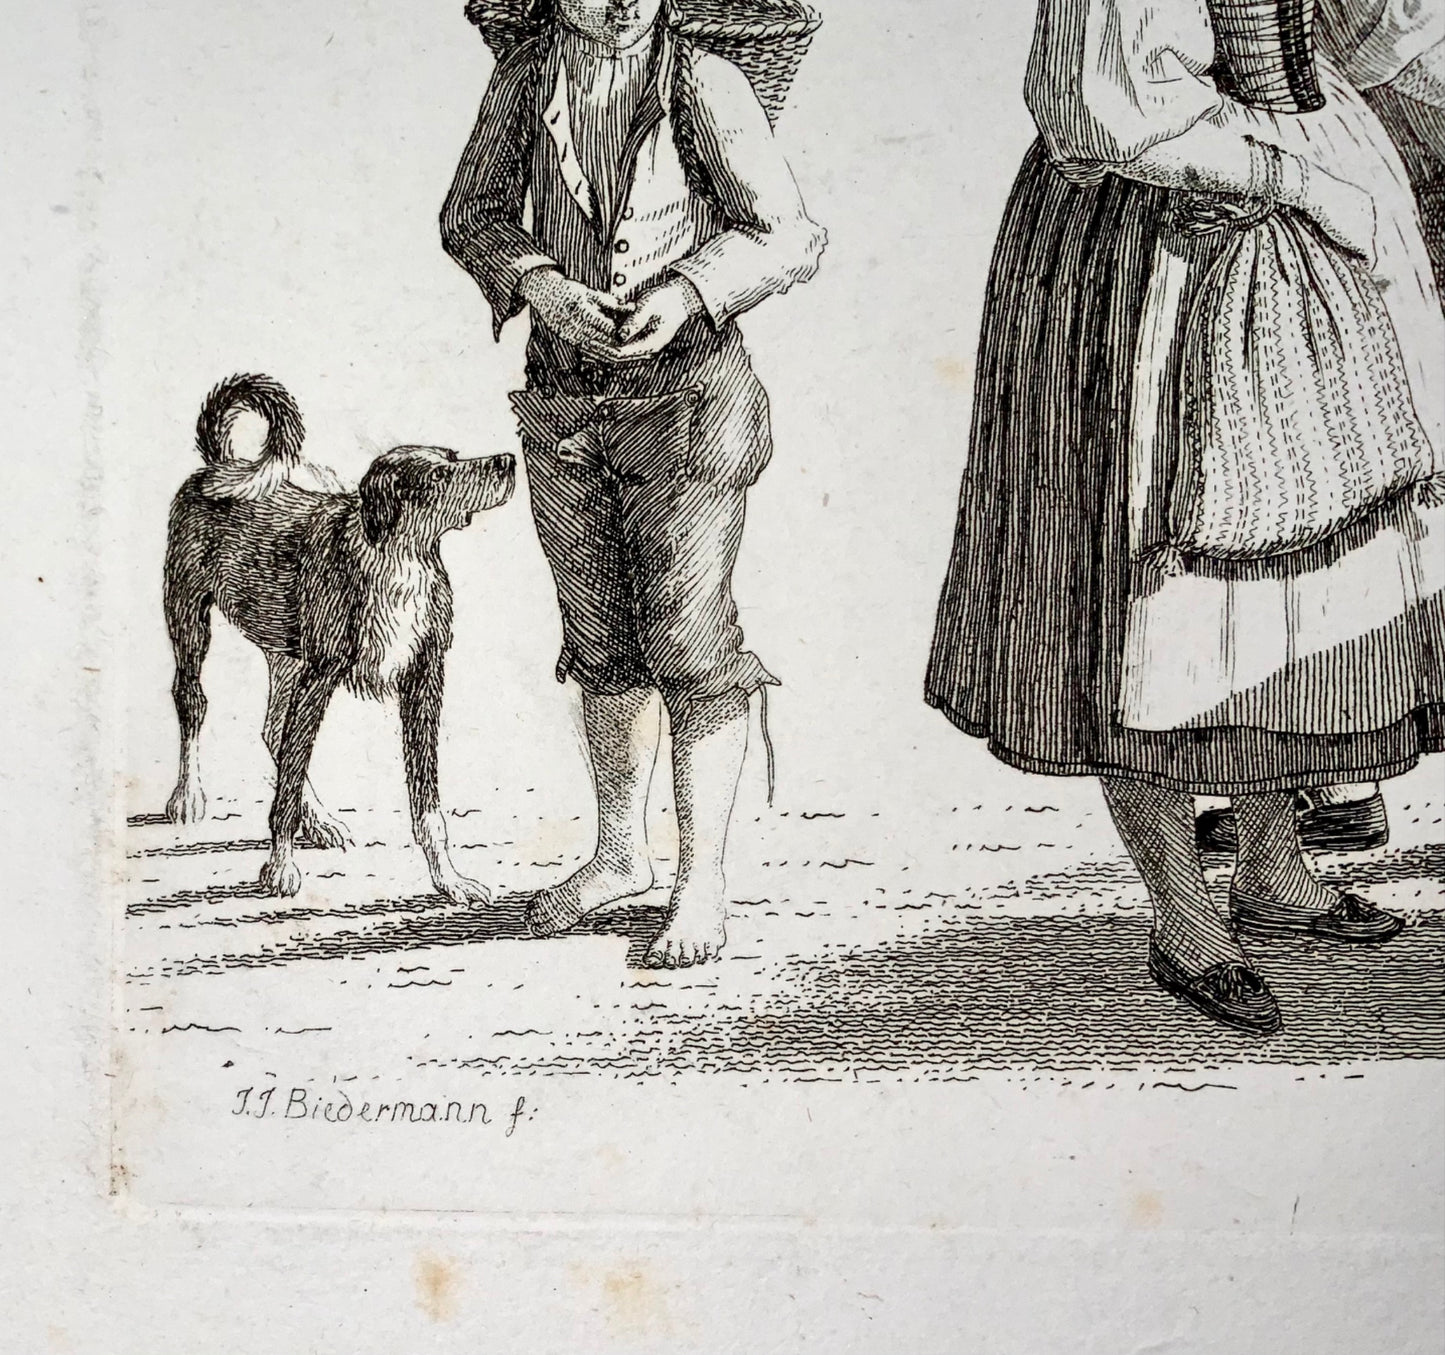 1810 Swiss Bookseller, fine etching by Johann Jakob Biedermann